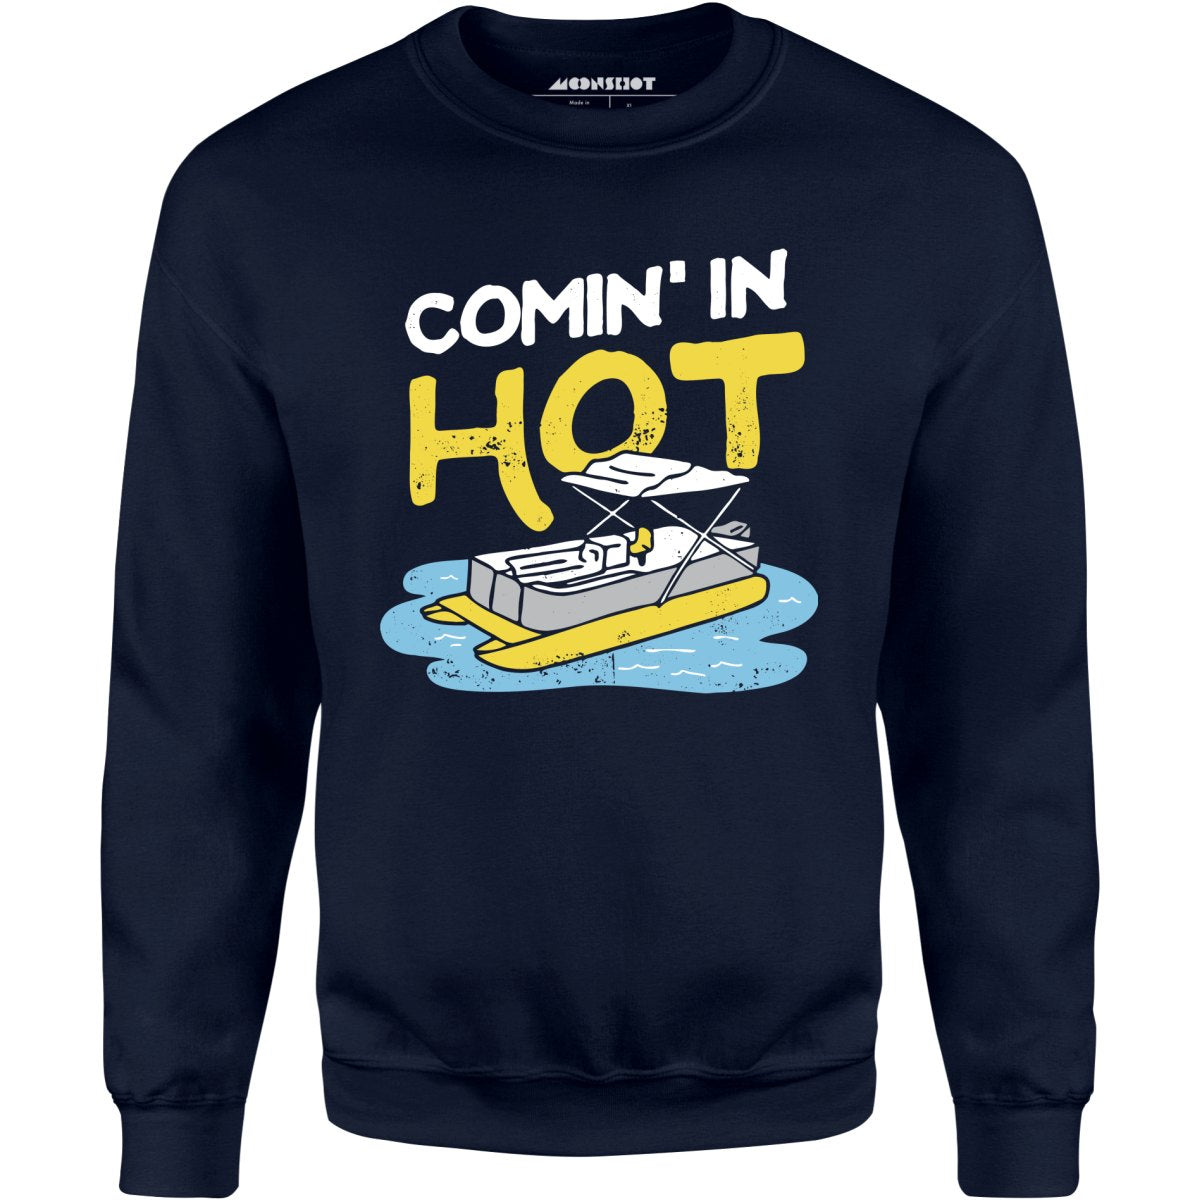 Comin' in Hot - Unisex Sweatshirt